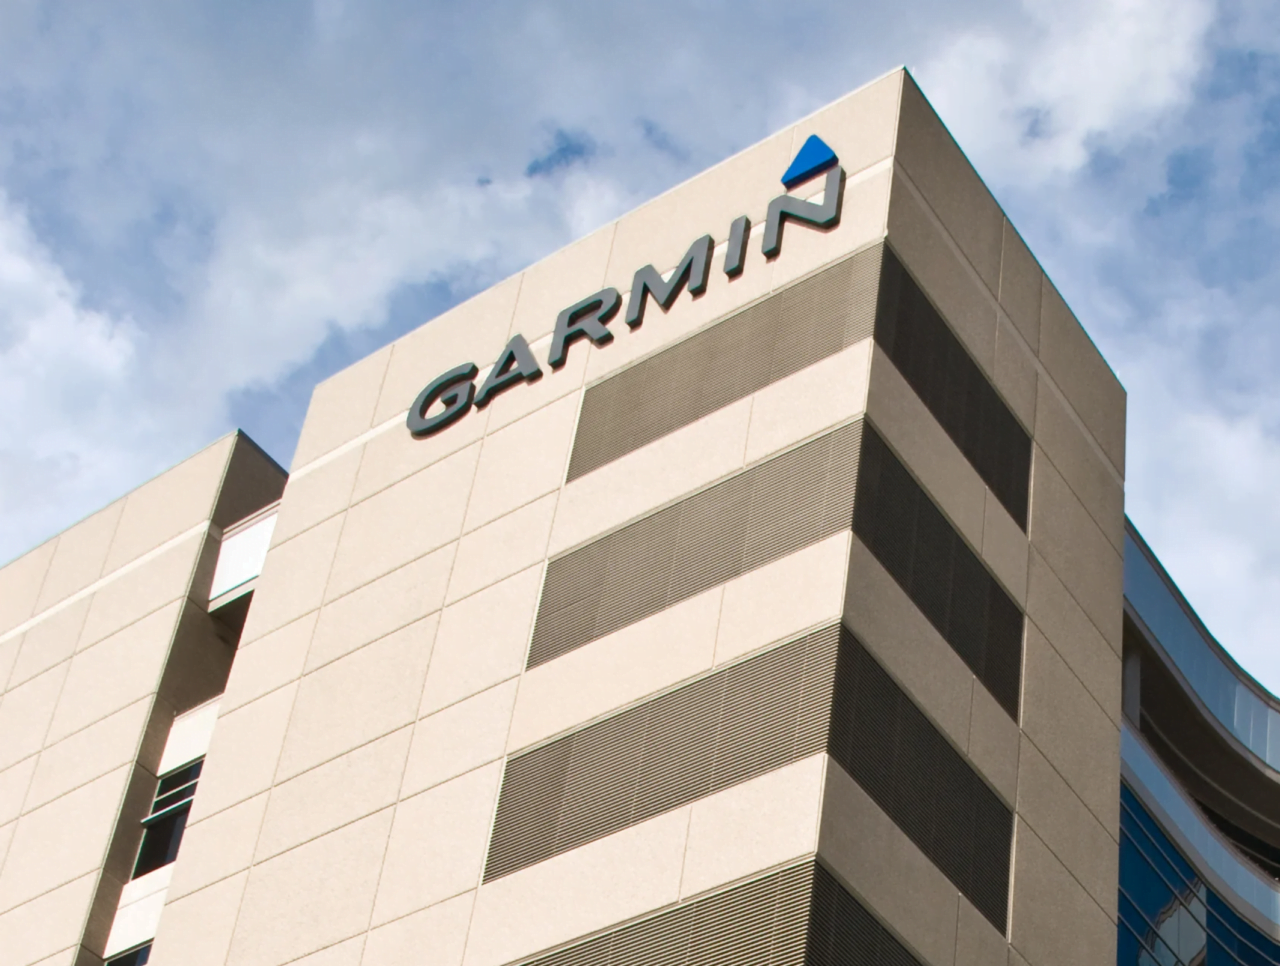 Fragment siedziby producenta Garmin z logo w górnej części budynku